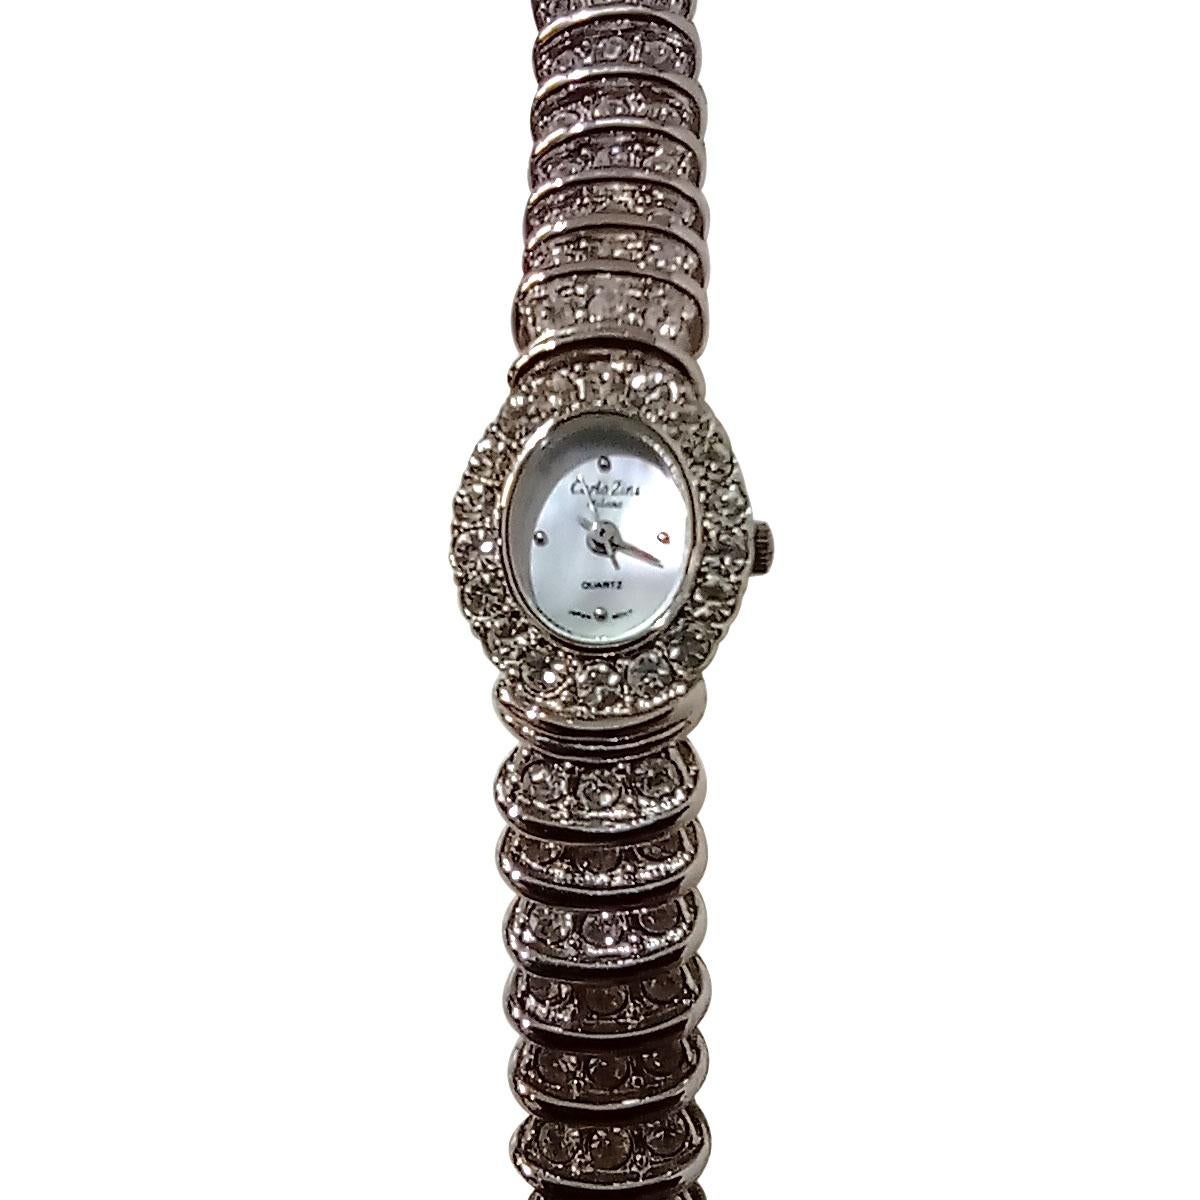 Carlo Zini Rhodium Jewel Watch In New Condition For Sale In Gazzaniga (BG), IT